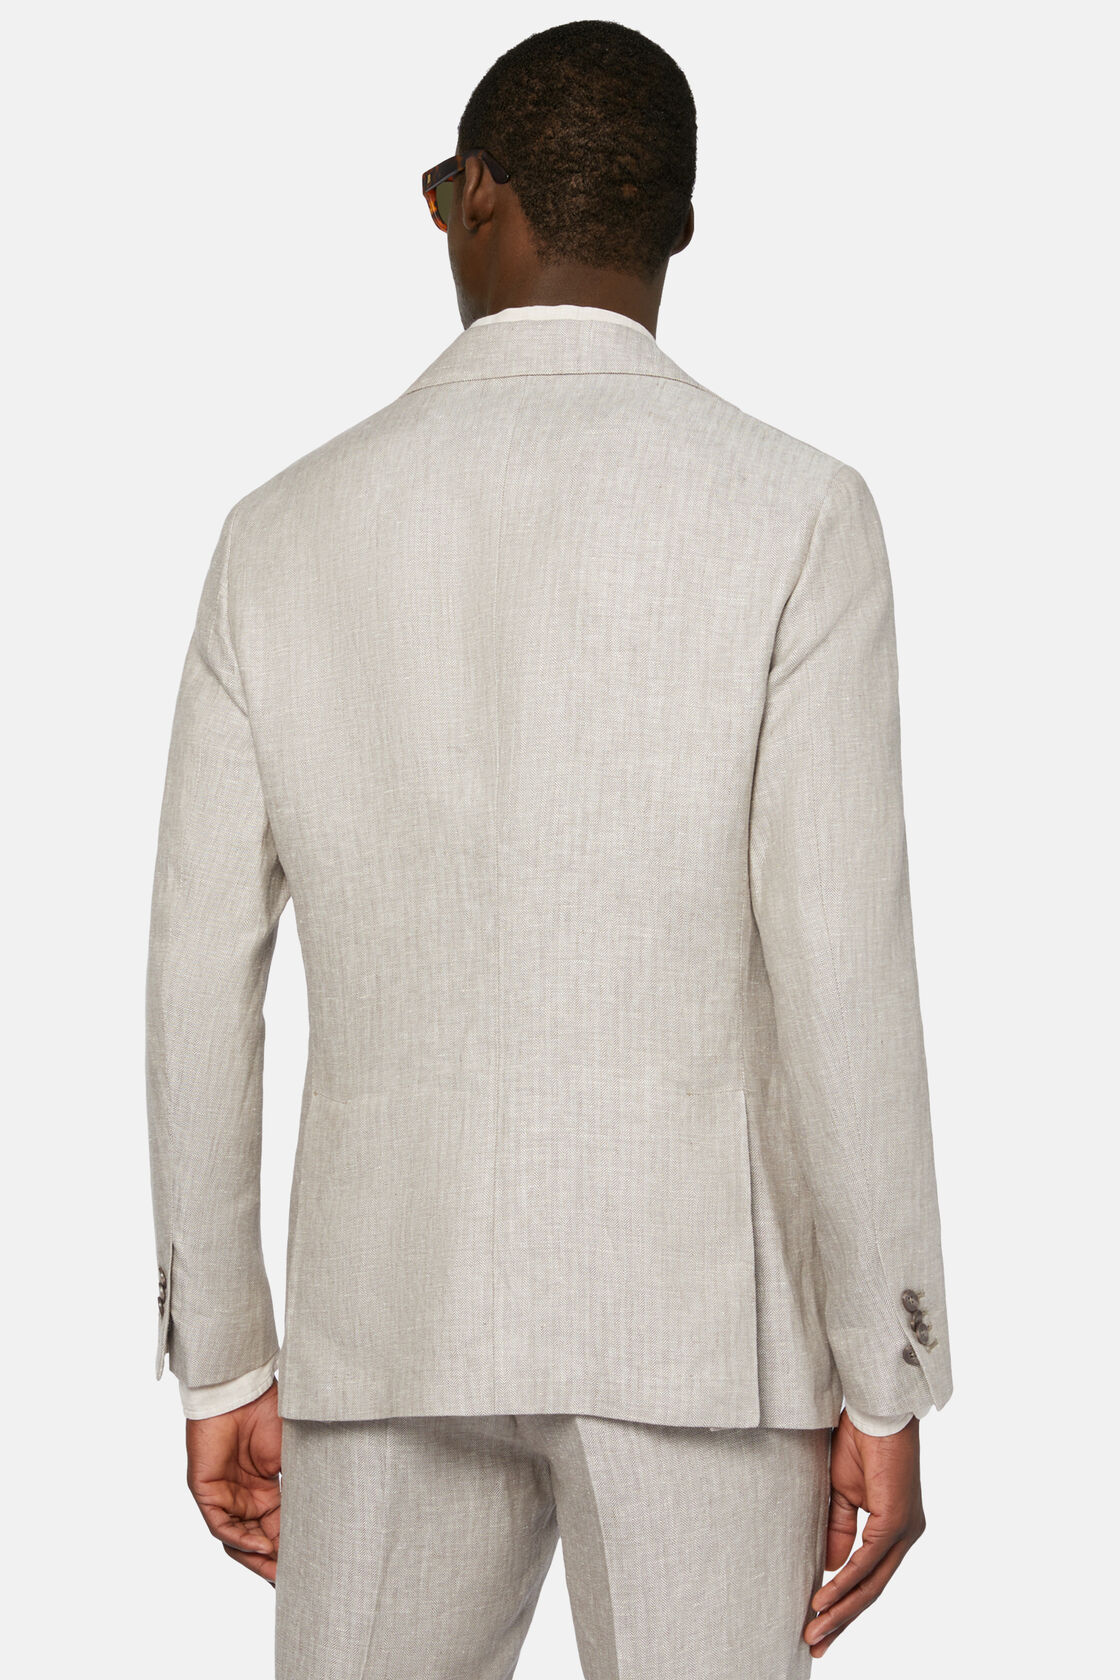 Herringbone Linen Suit Style Capri, Taupe, hi-res